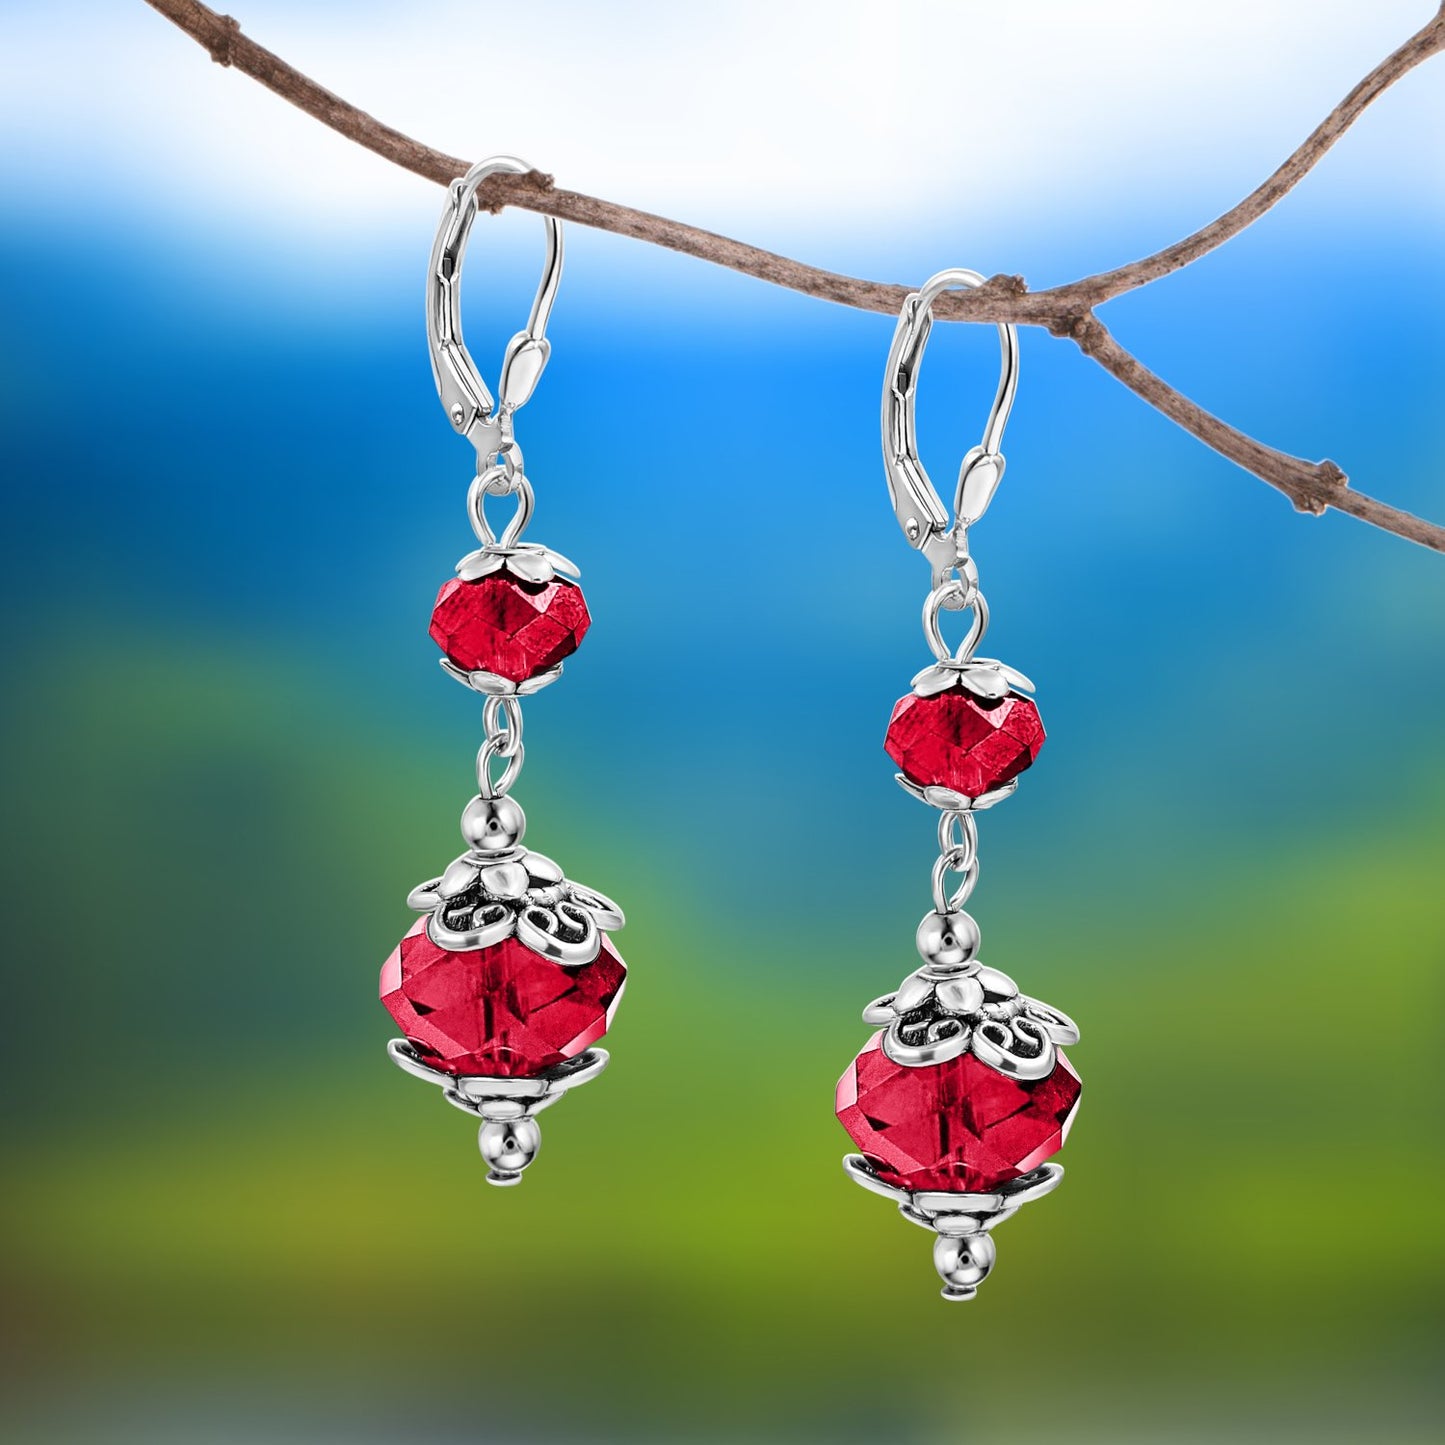 BESHEEK Silvertone Stainless Steel Red Crystal Leverback Dangle Earrings | Handmade Hypoallergenic Boho Beach Gala Wedding Style Fashion Earrings